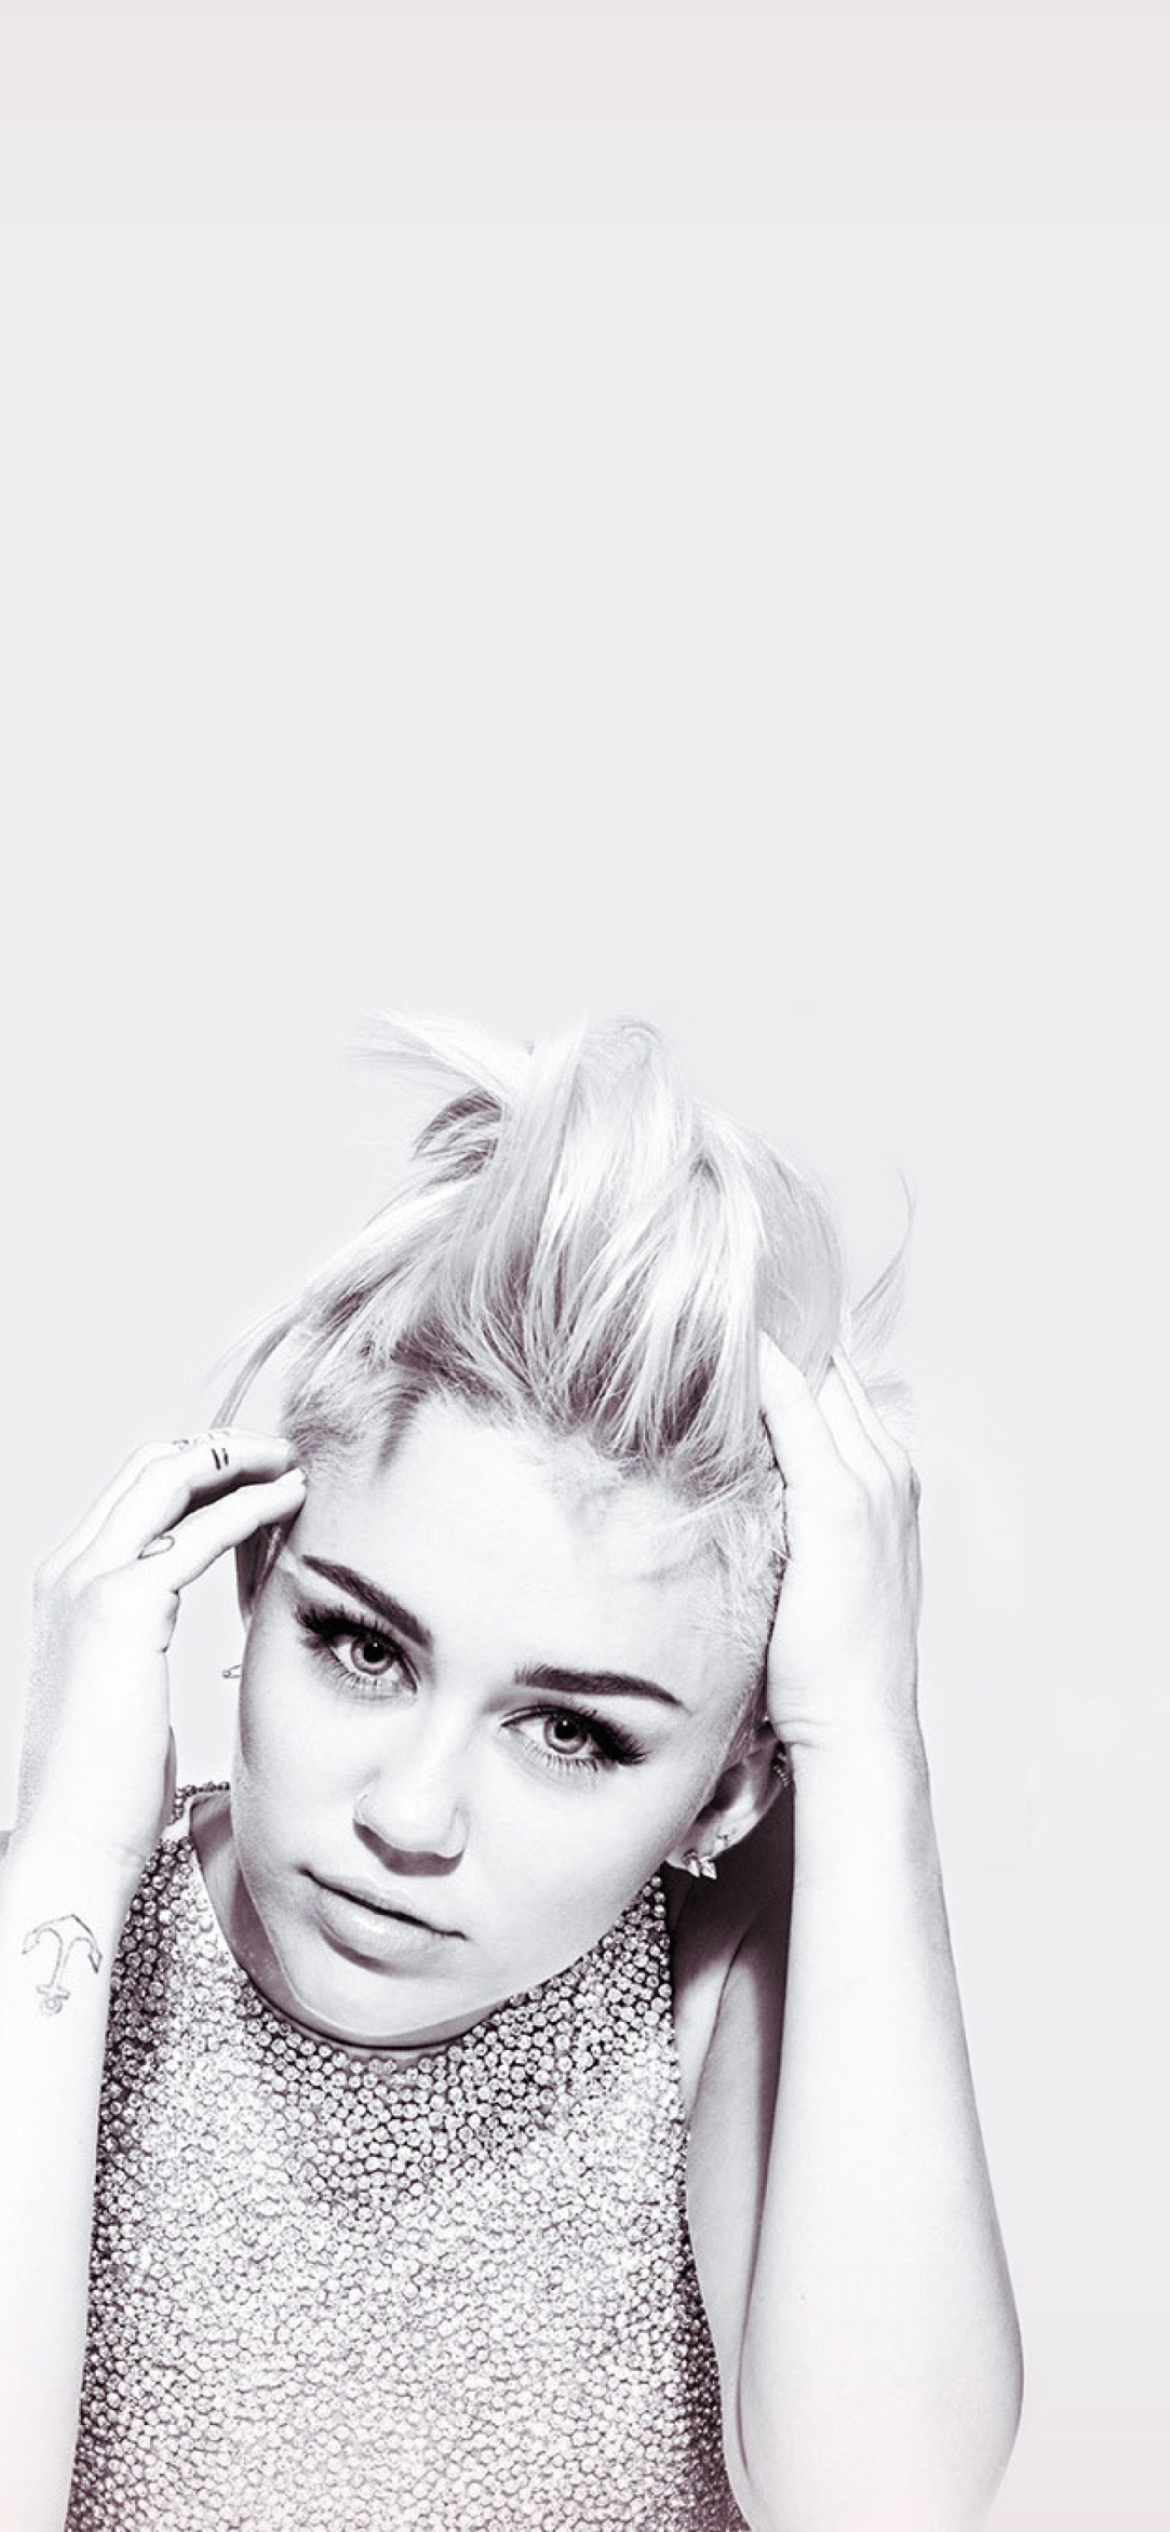 Обои Miley Cyrus 1170x2532